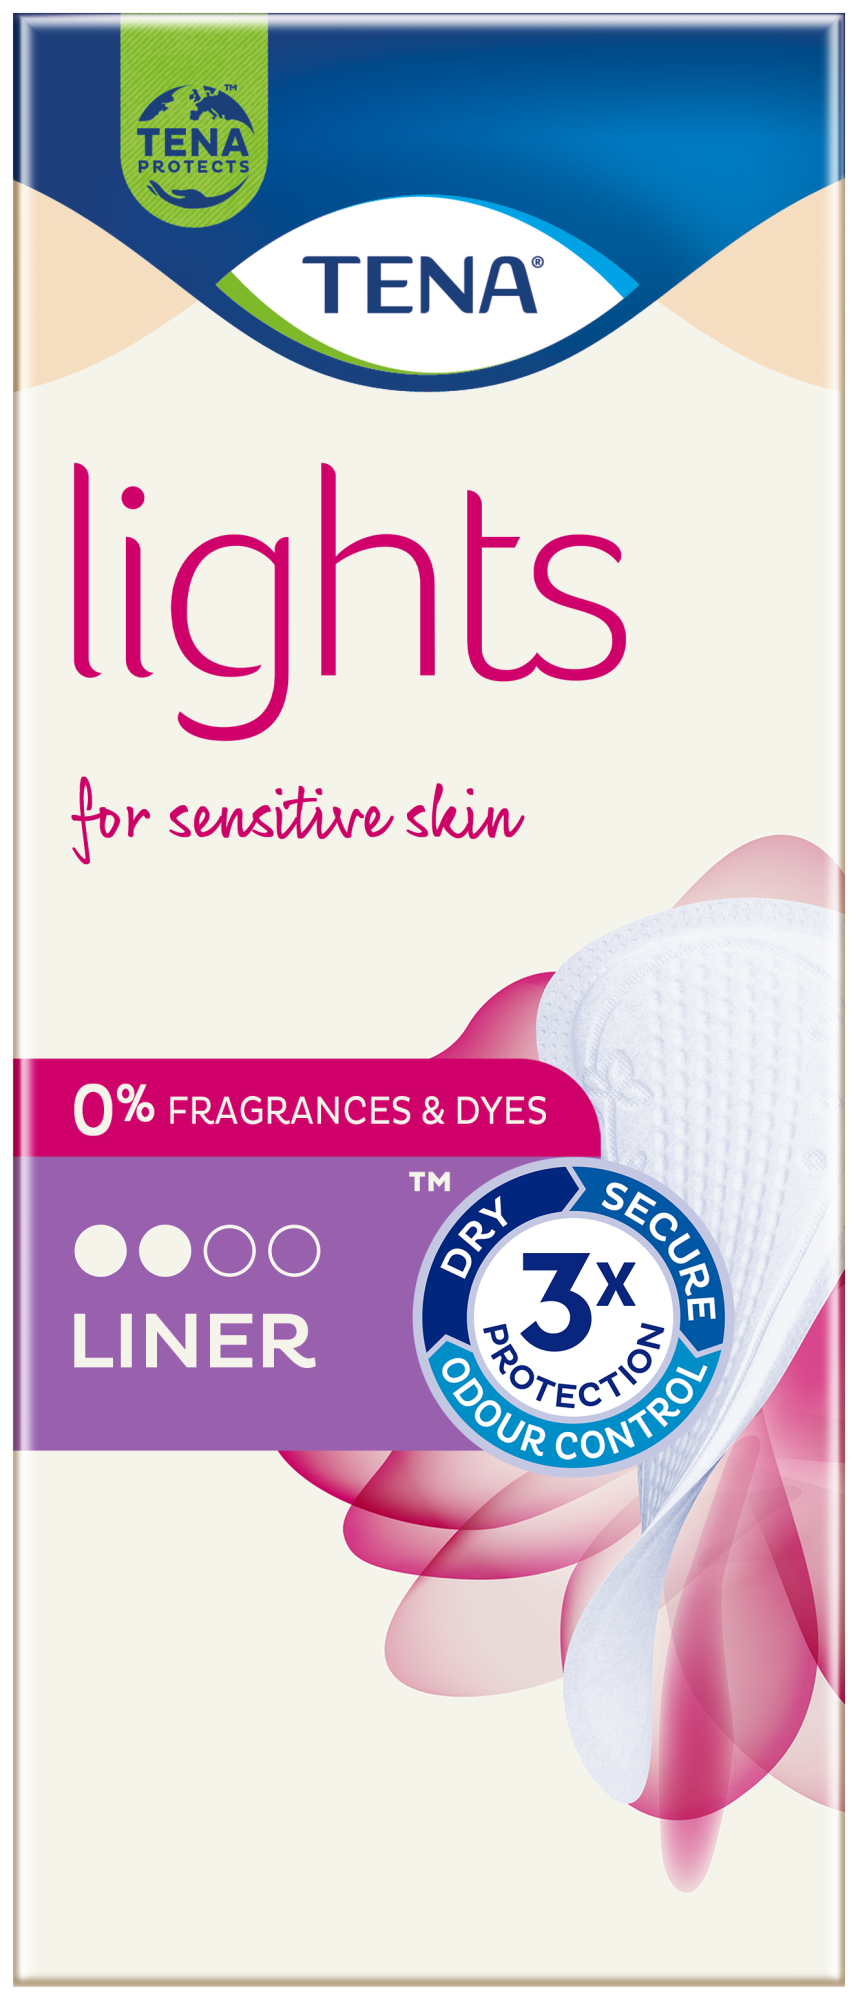 TENA Lights Incontinence Liner | For Sensitive skin